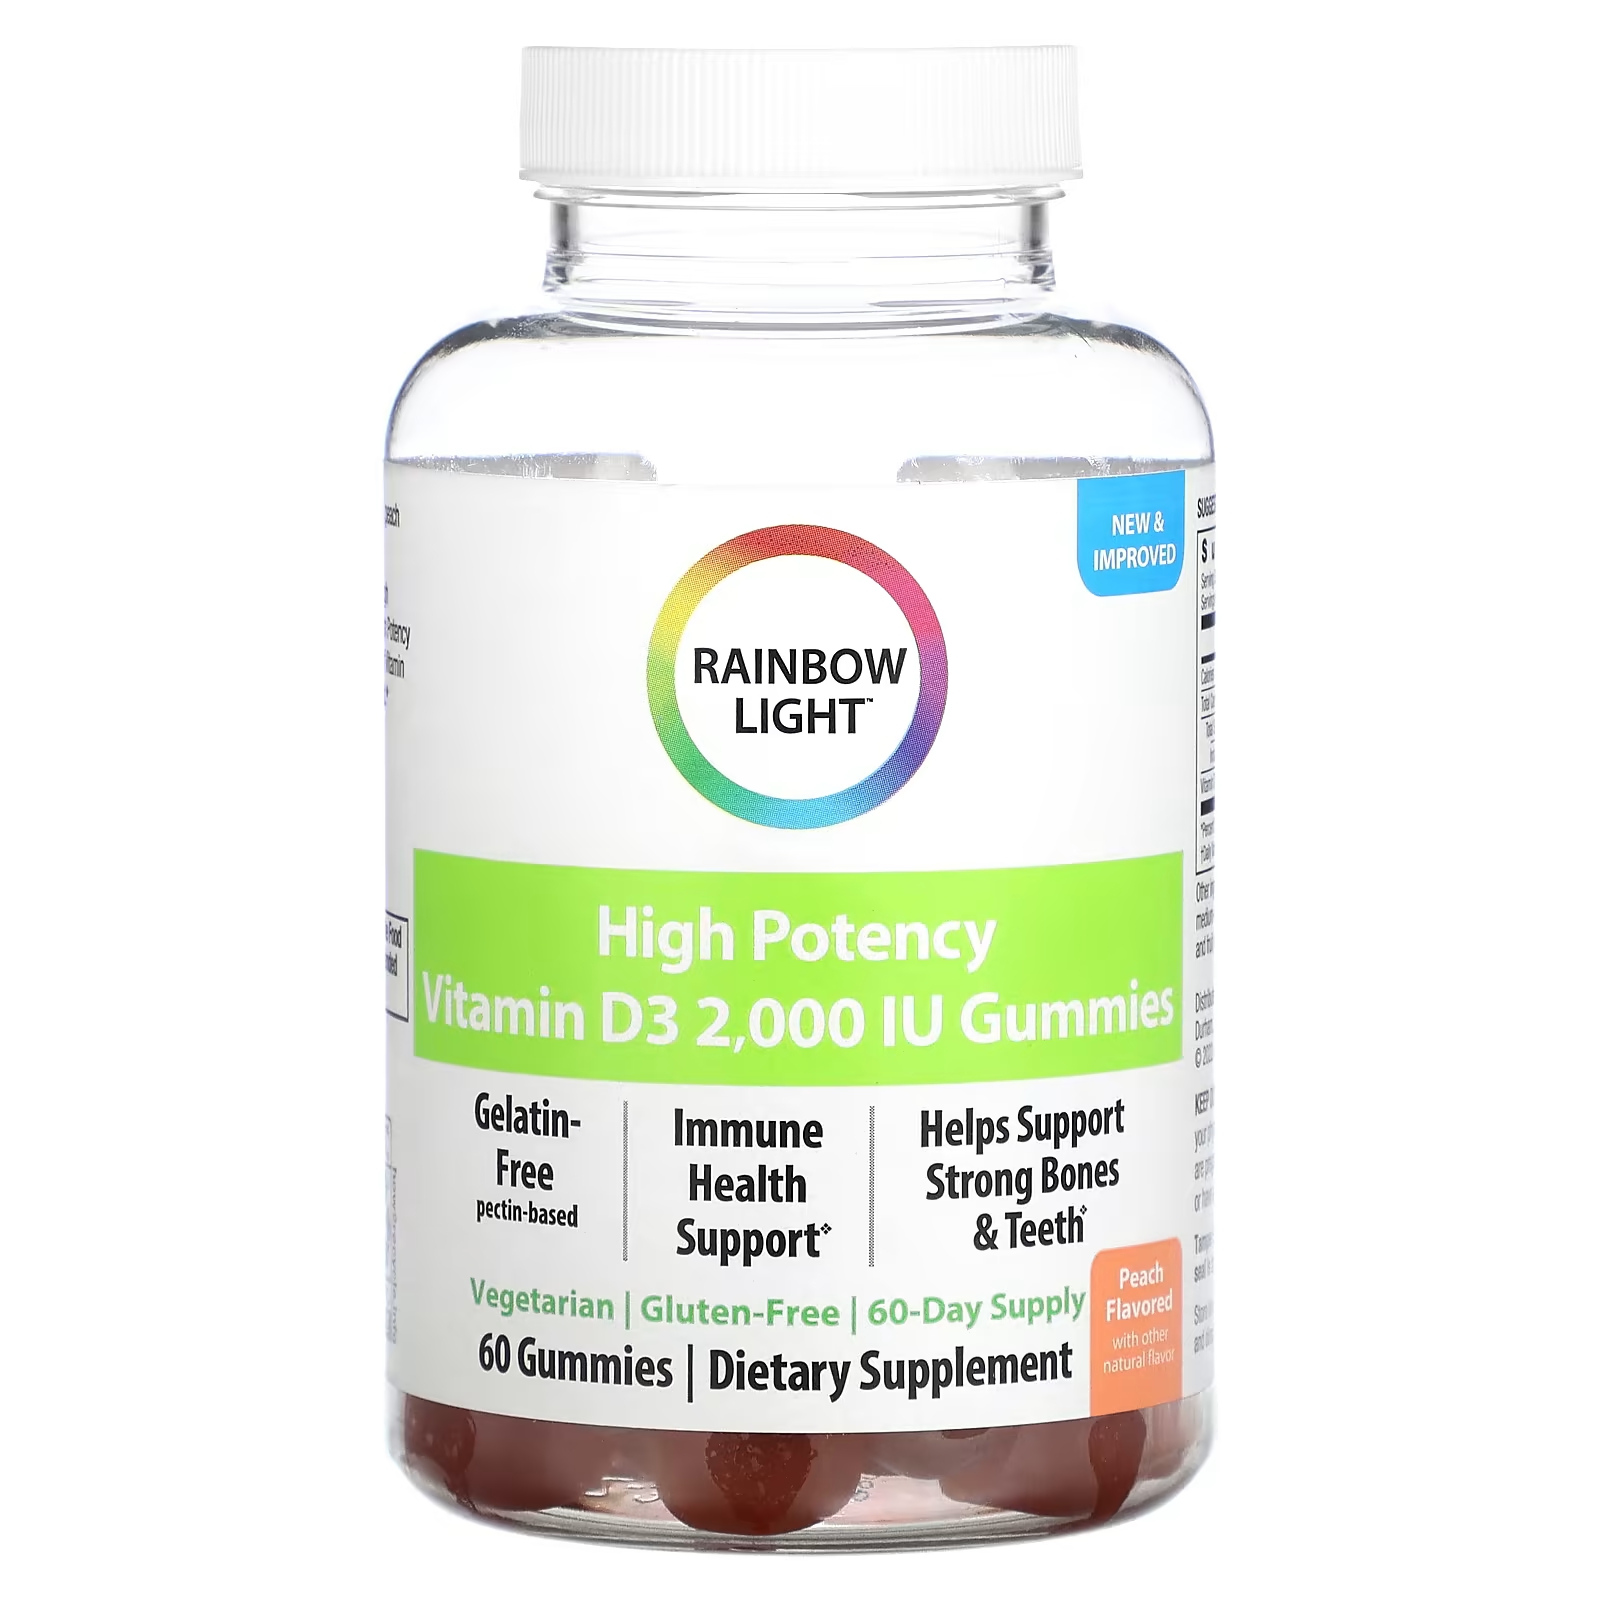 Высокоэффективный витамин D3 Rainbow Light, персик, 2000 МЕ, 60 жевательных таблеток rainbow light высокоэффективный витамин d3 персик 2000 ме 120 жевательных таблеток